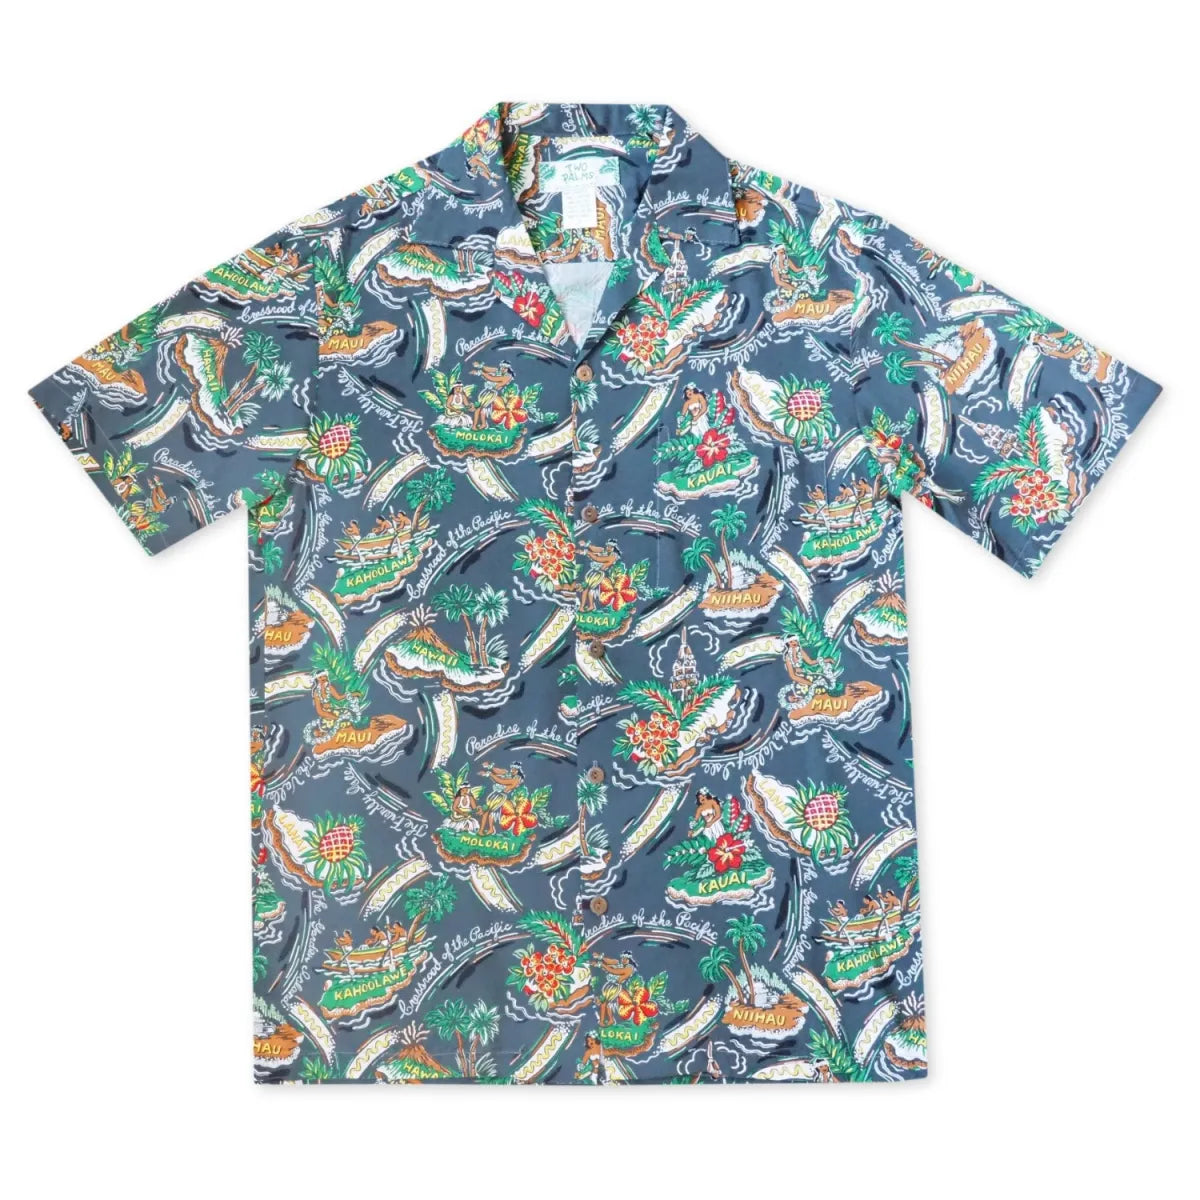 Pacific grey hawaiian rayon shirt